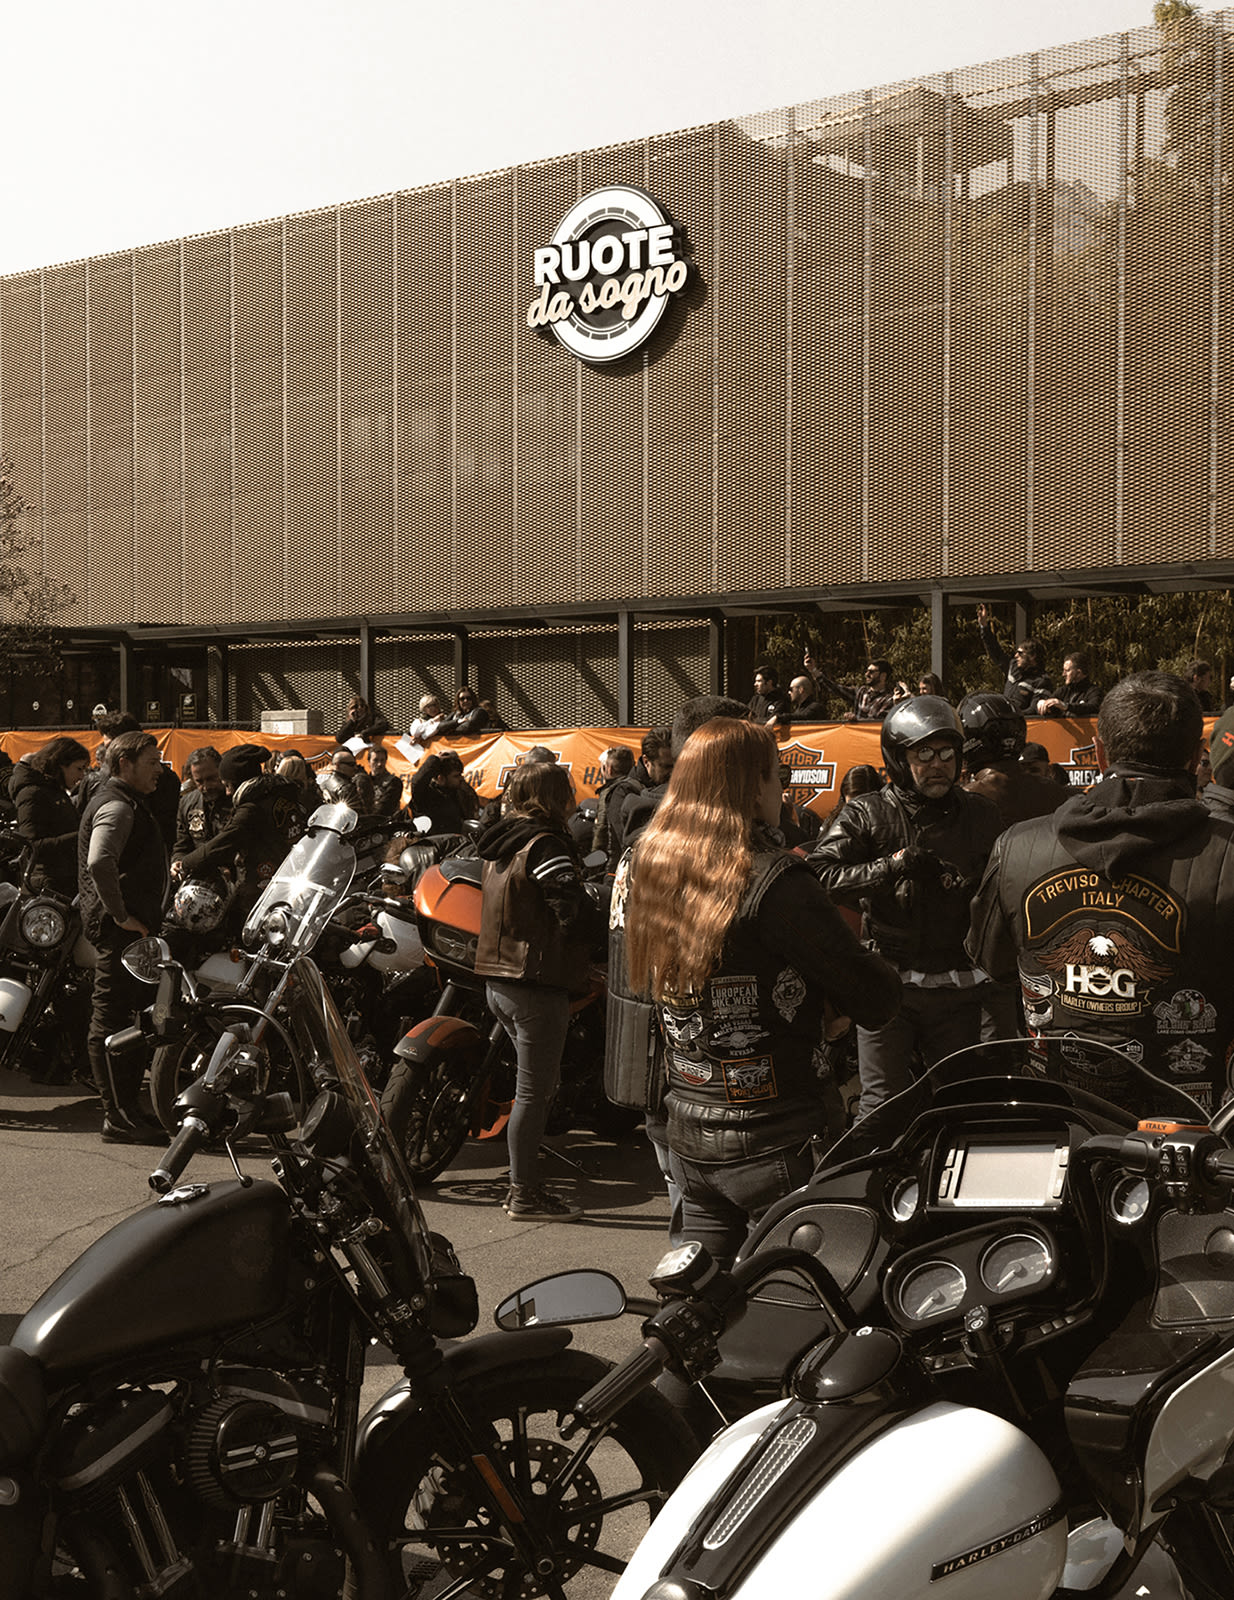 Rompighiaccio Harley Davidson - arrivo-17 16